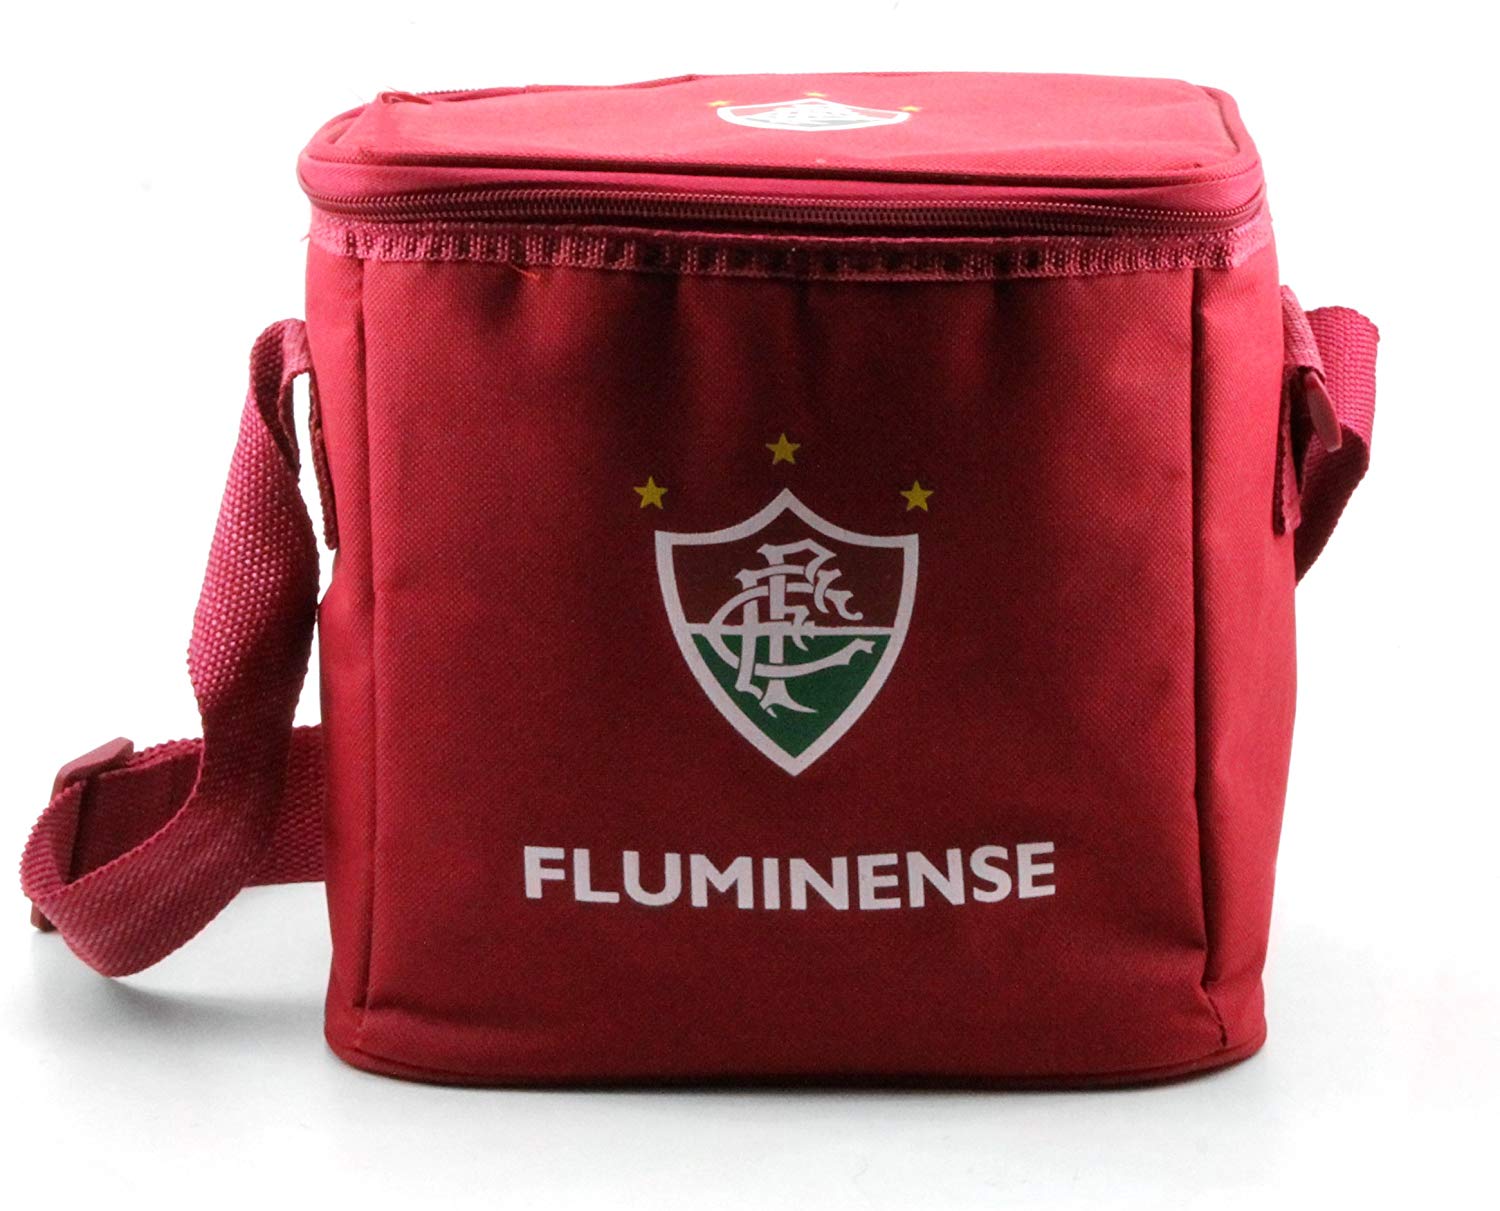 Craque do Fluminense faz três, Brasil atropela Nova Caledônia e